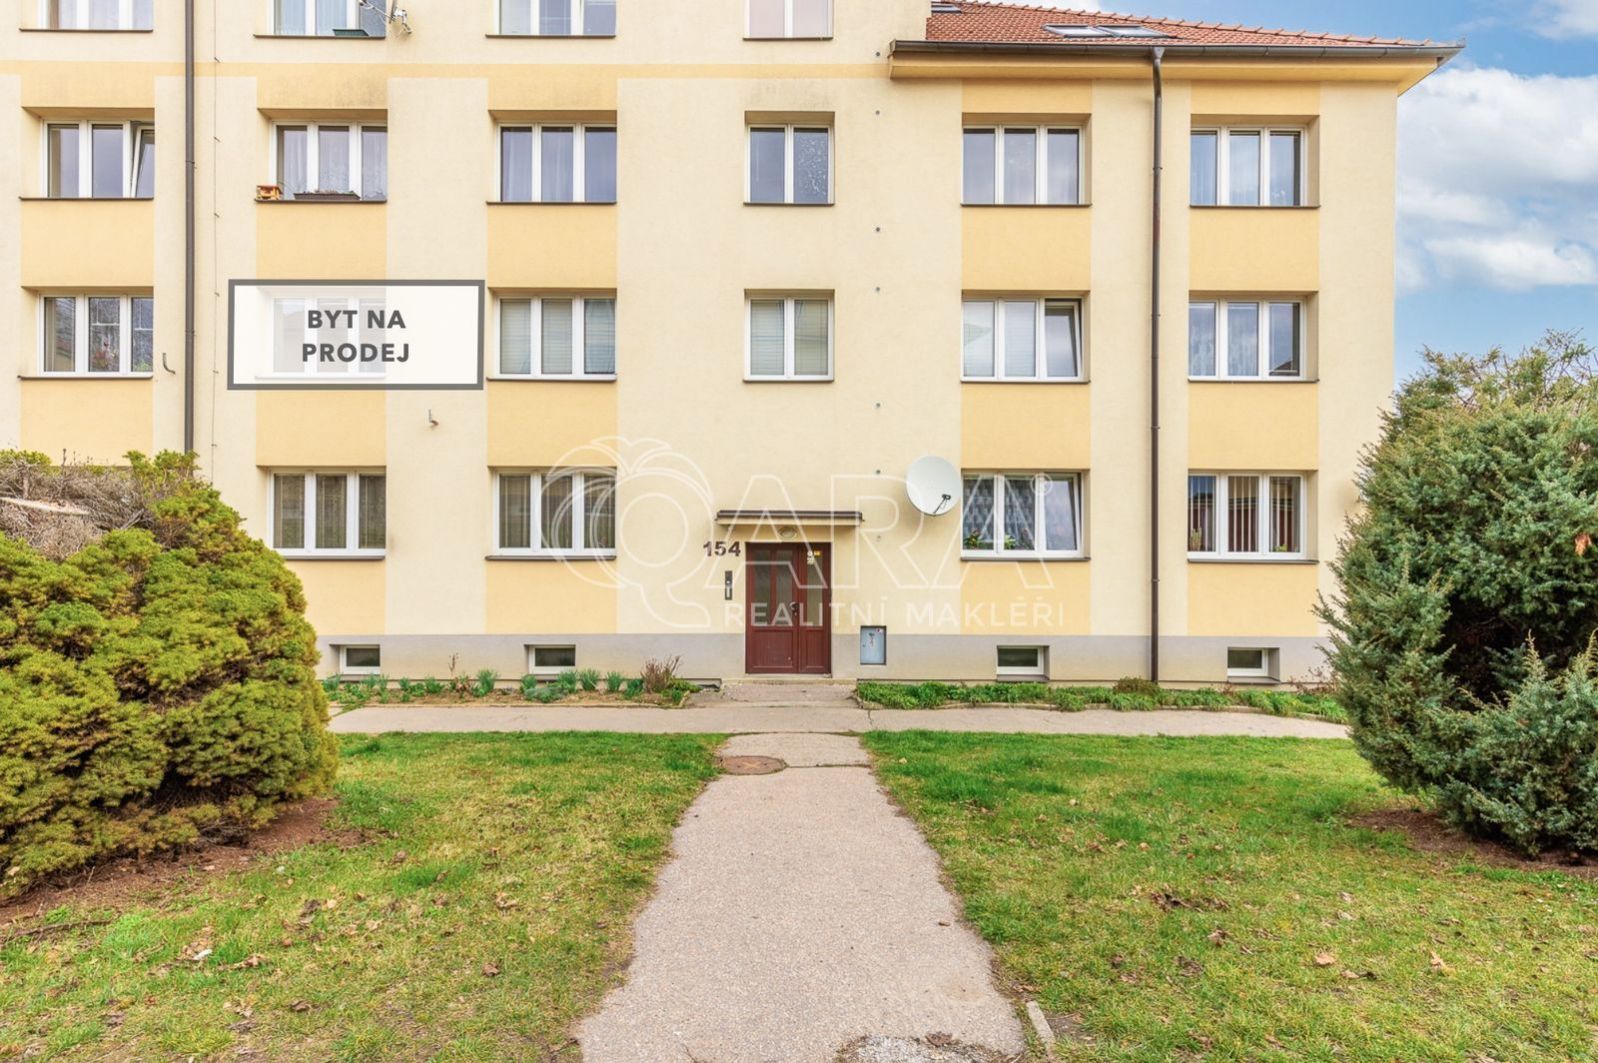 NA PRODEJ - světlý byt o dispozici 2+1, 54 m2, na ideální adrese - Vyšehrad, Český Krumlov, obrázek č. 2